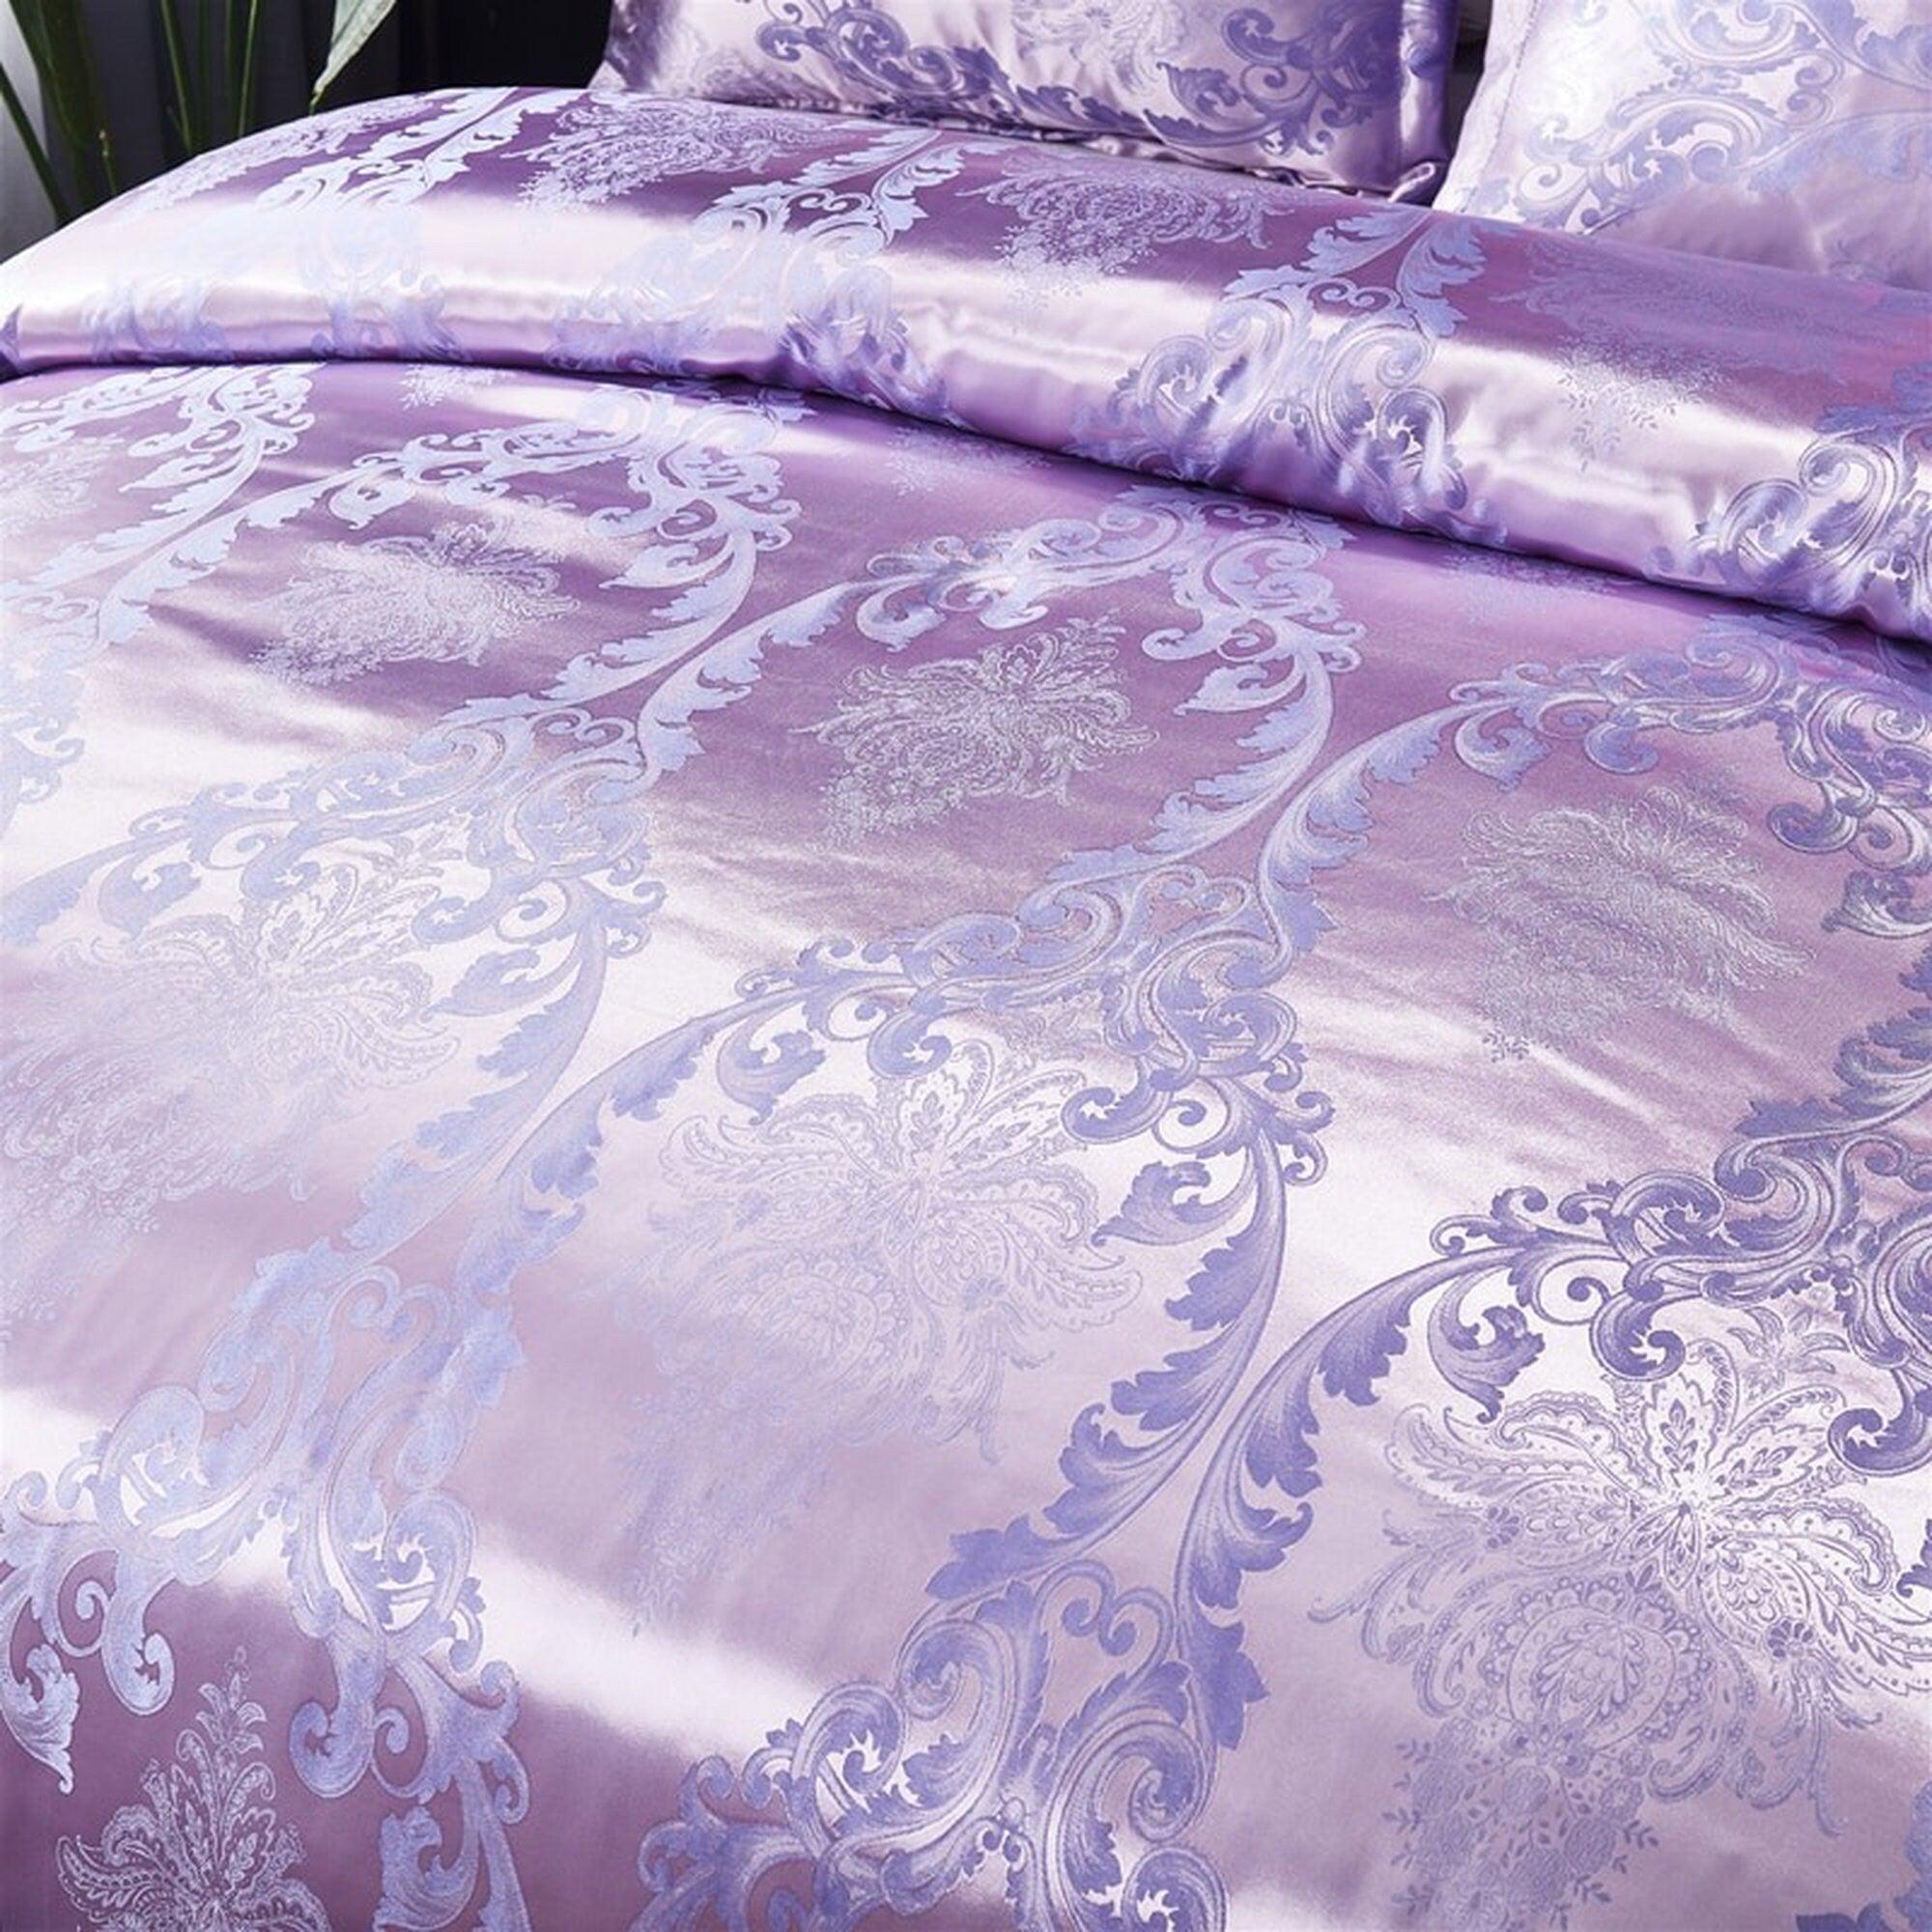 daintyduvet Luxury Lavender Purple Bedding made with Silky Jacquard Fabric, Damask Duvet Cover Set, Designer Bedding, Aesthetic Duvet King Queen Full